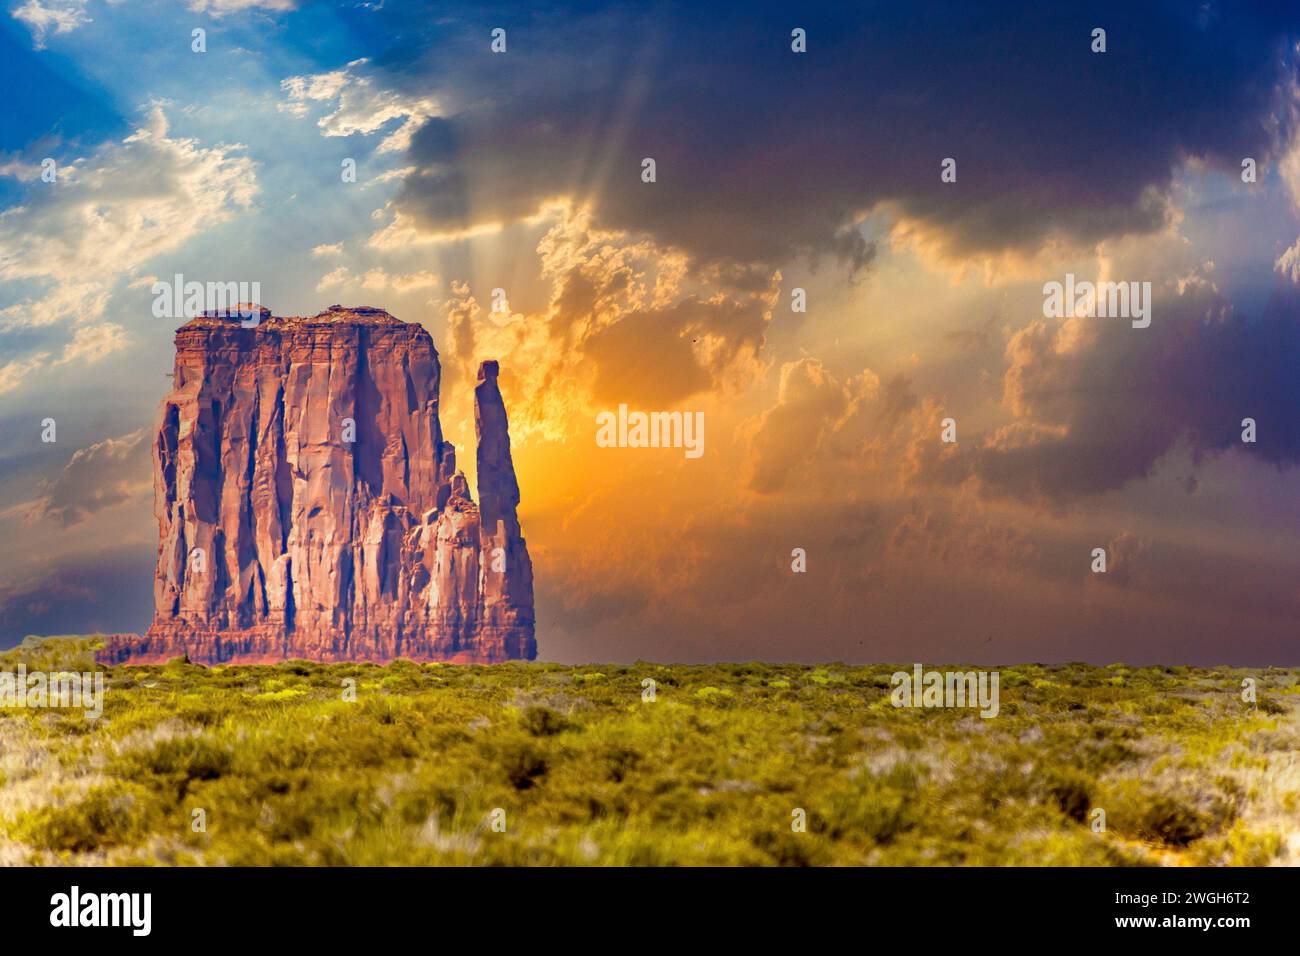 im Monument Valley in Arizona, Blick auf die SteInformation Merrik Butte Foto Stock